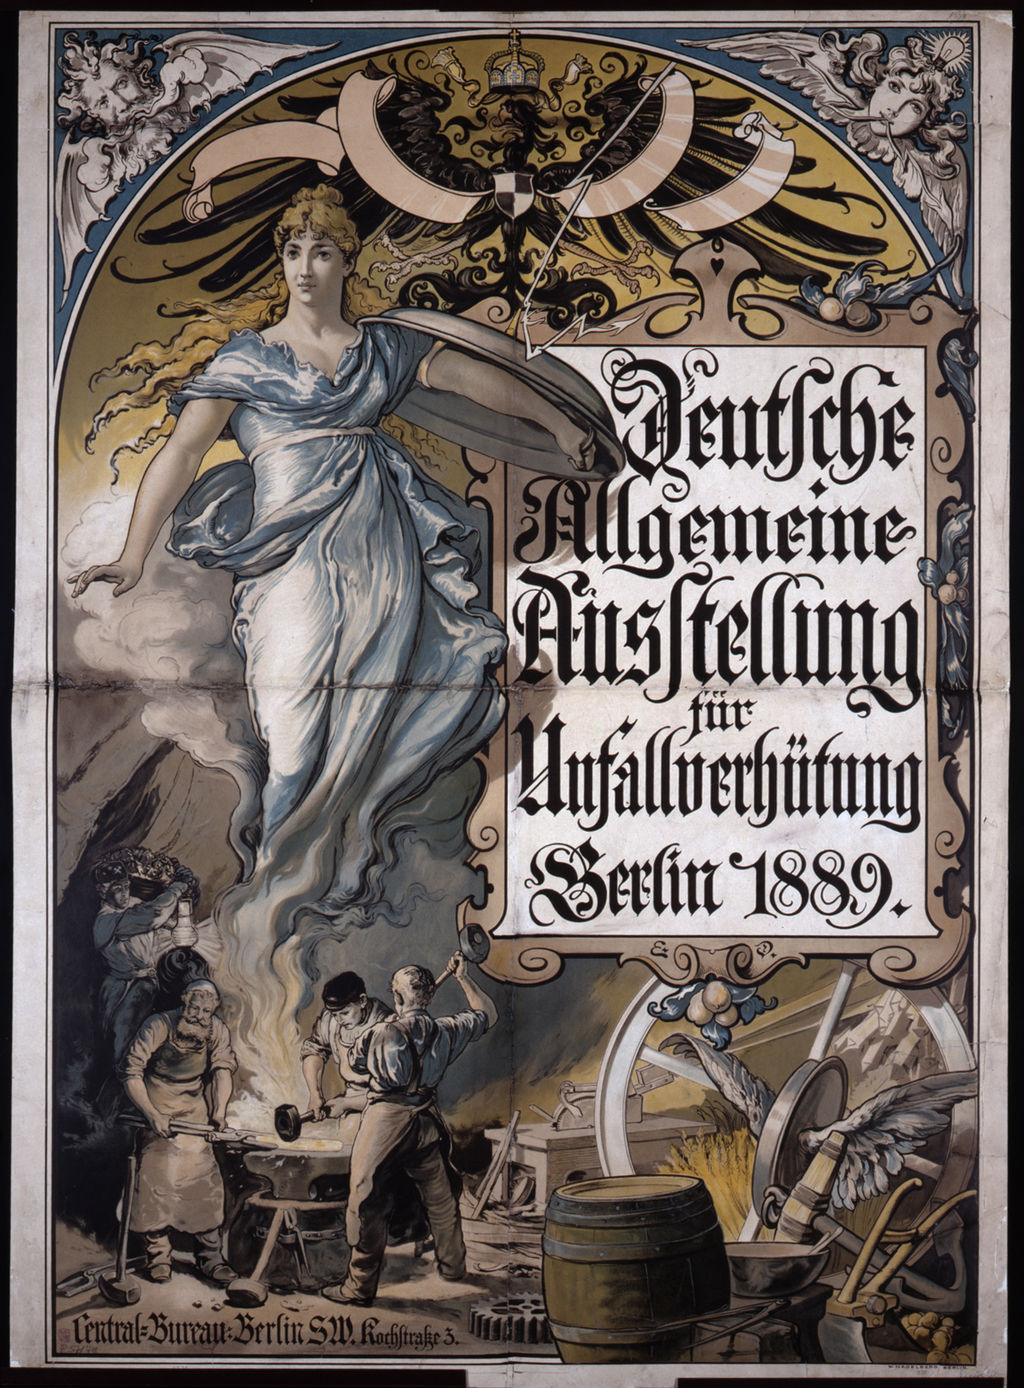 Plakat: Deutsche Allgemeine Ausstellung für Unfallverhütung, 1889